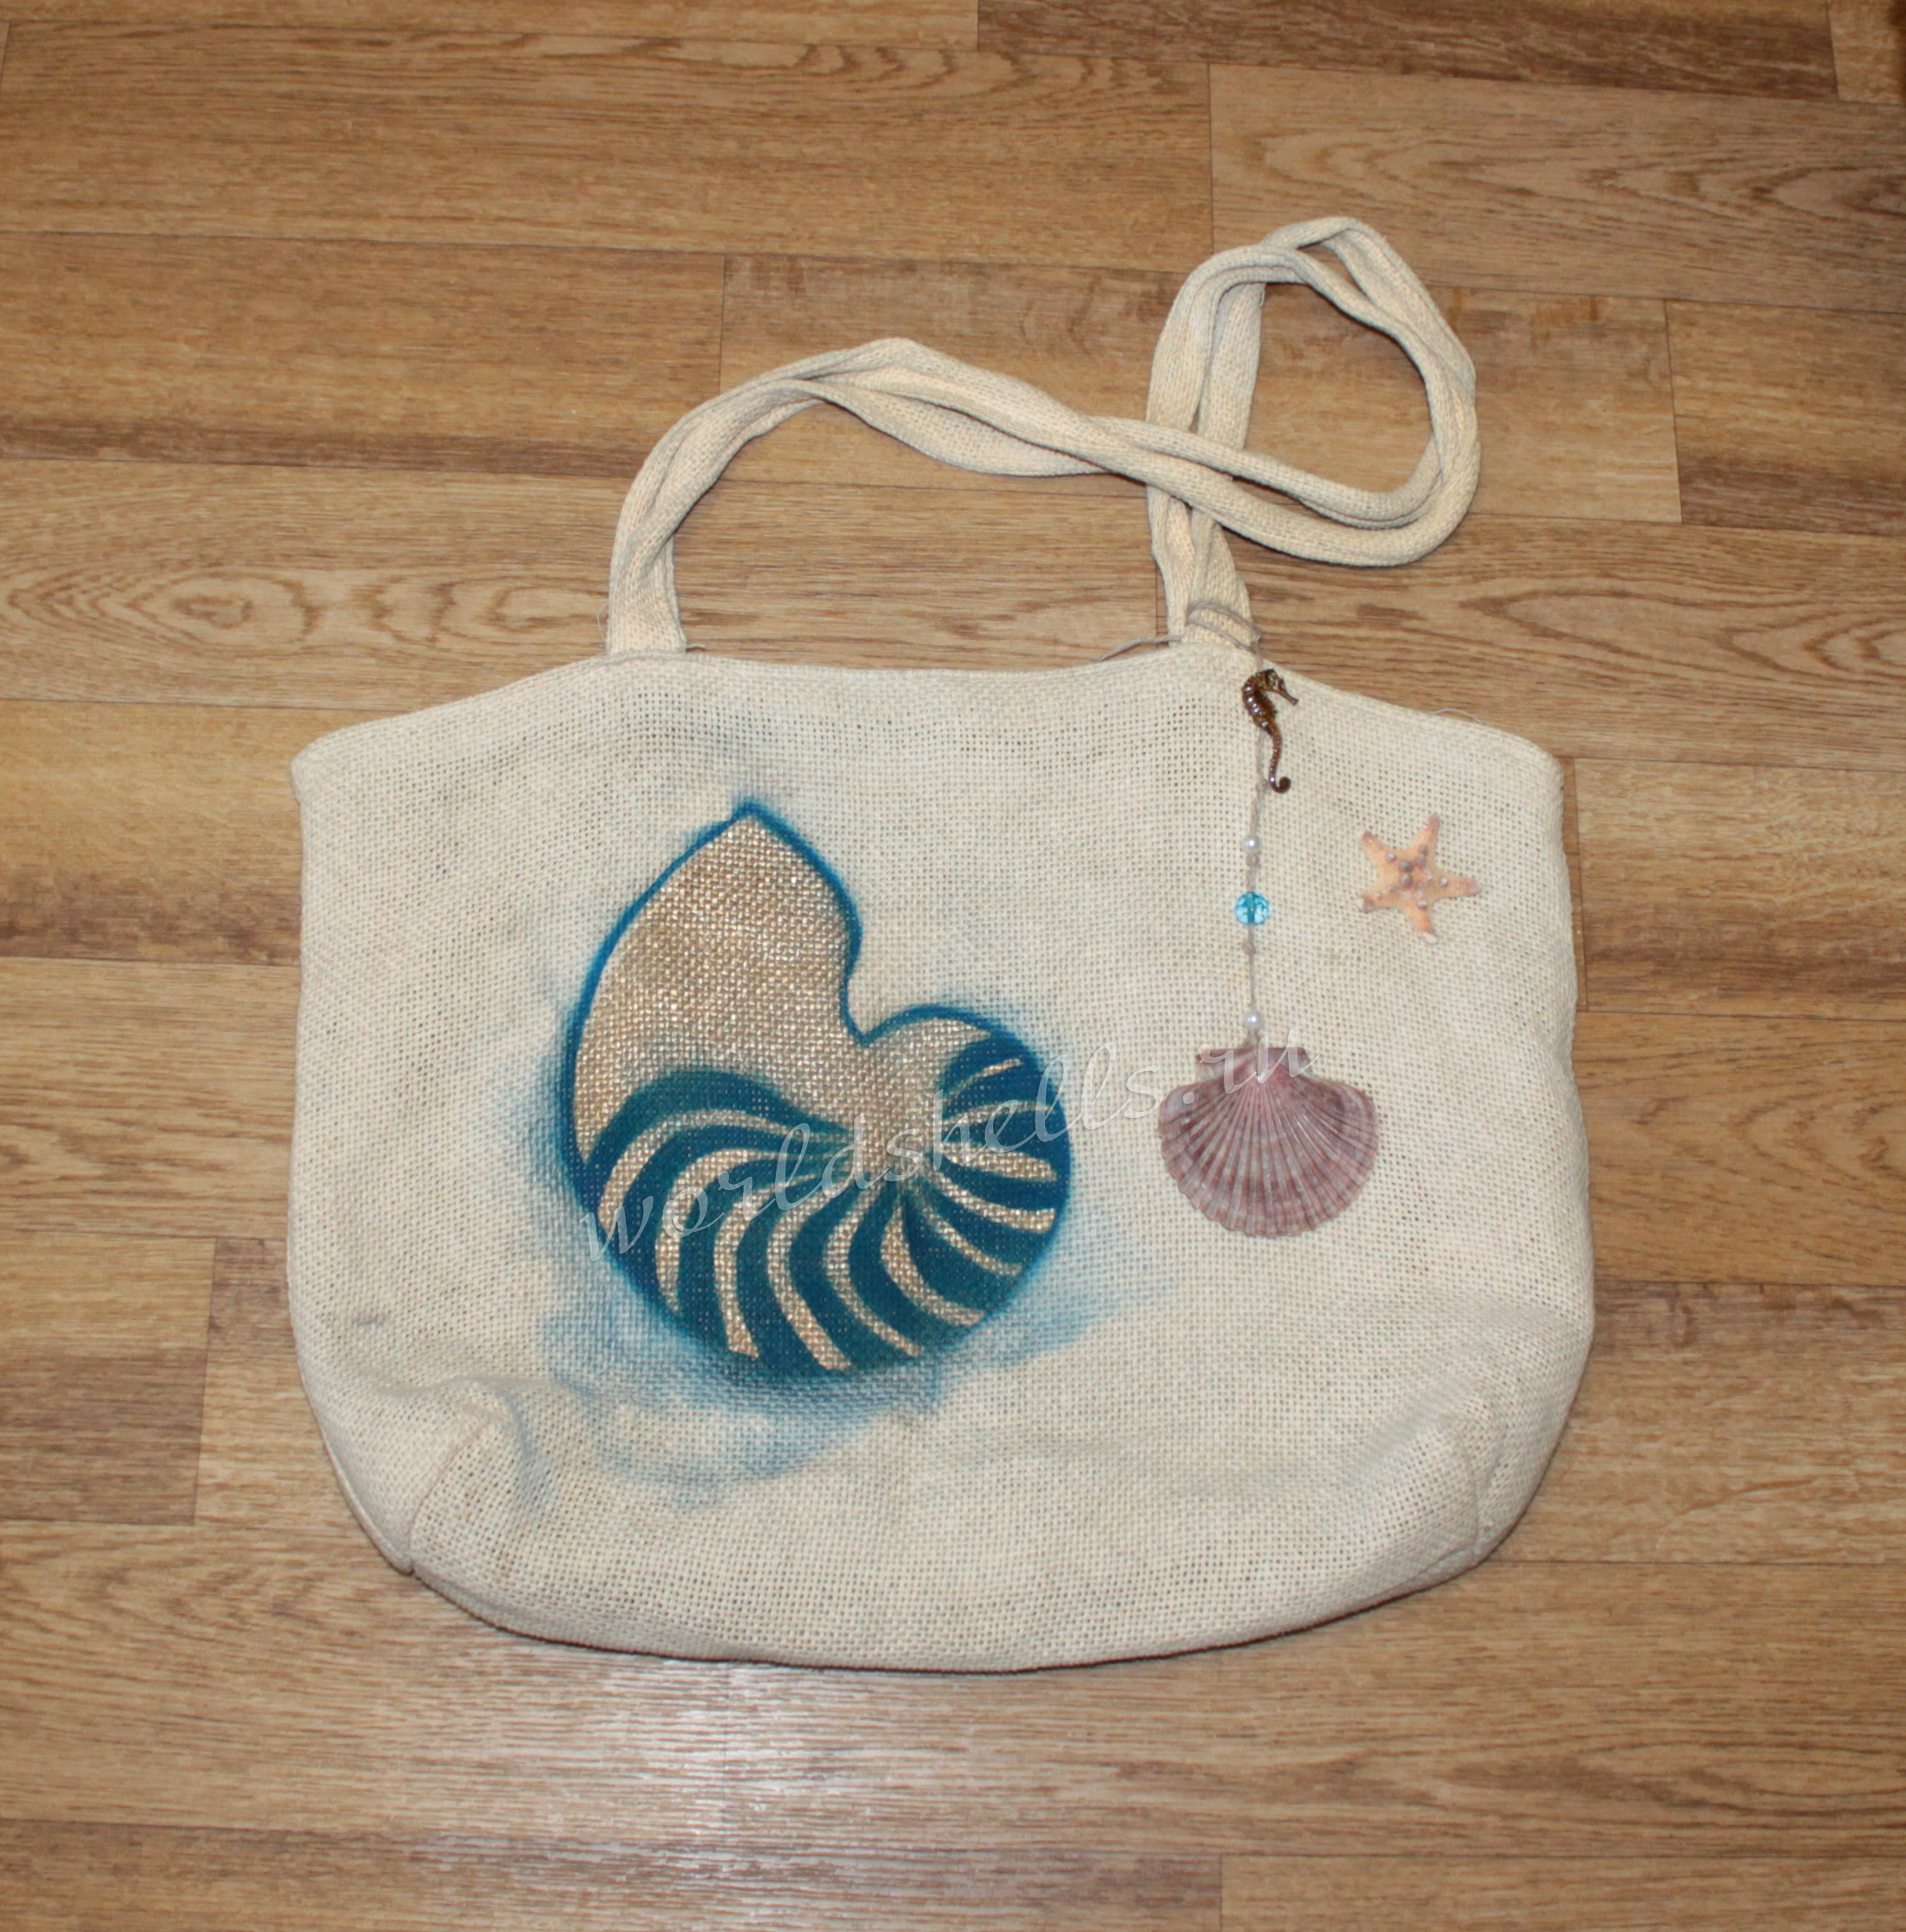 Морской декор пляжной сумки с морской звездой и ракушками